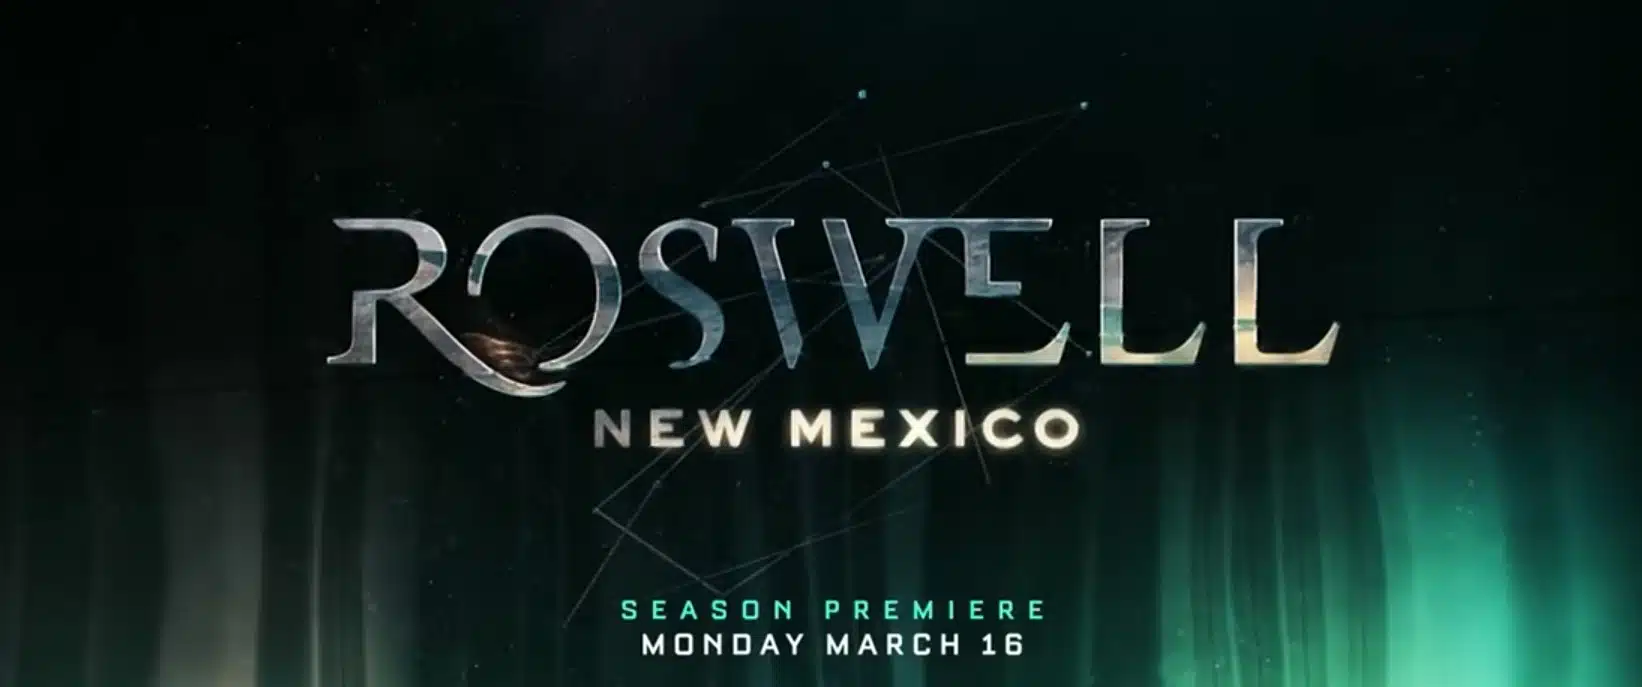 Roswell New Mexico 2 trama, cast, anticipazioni. Quando esce la serie tv